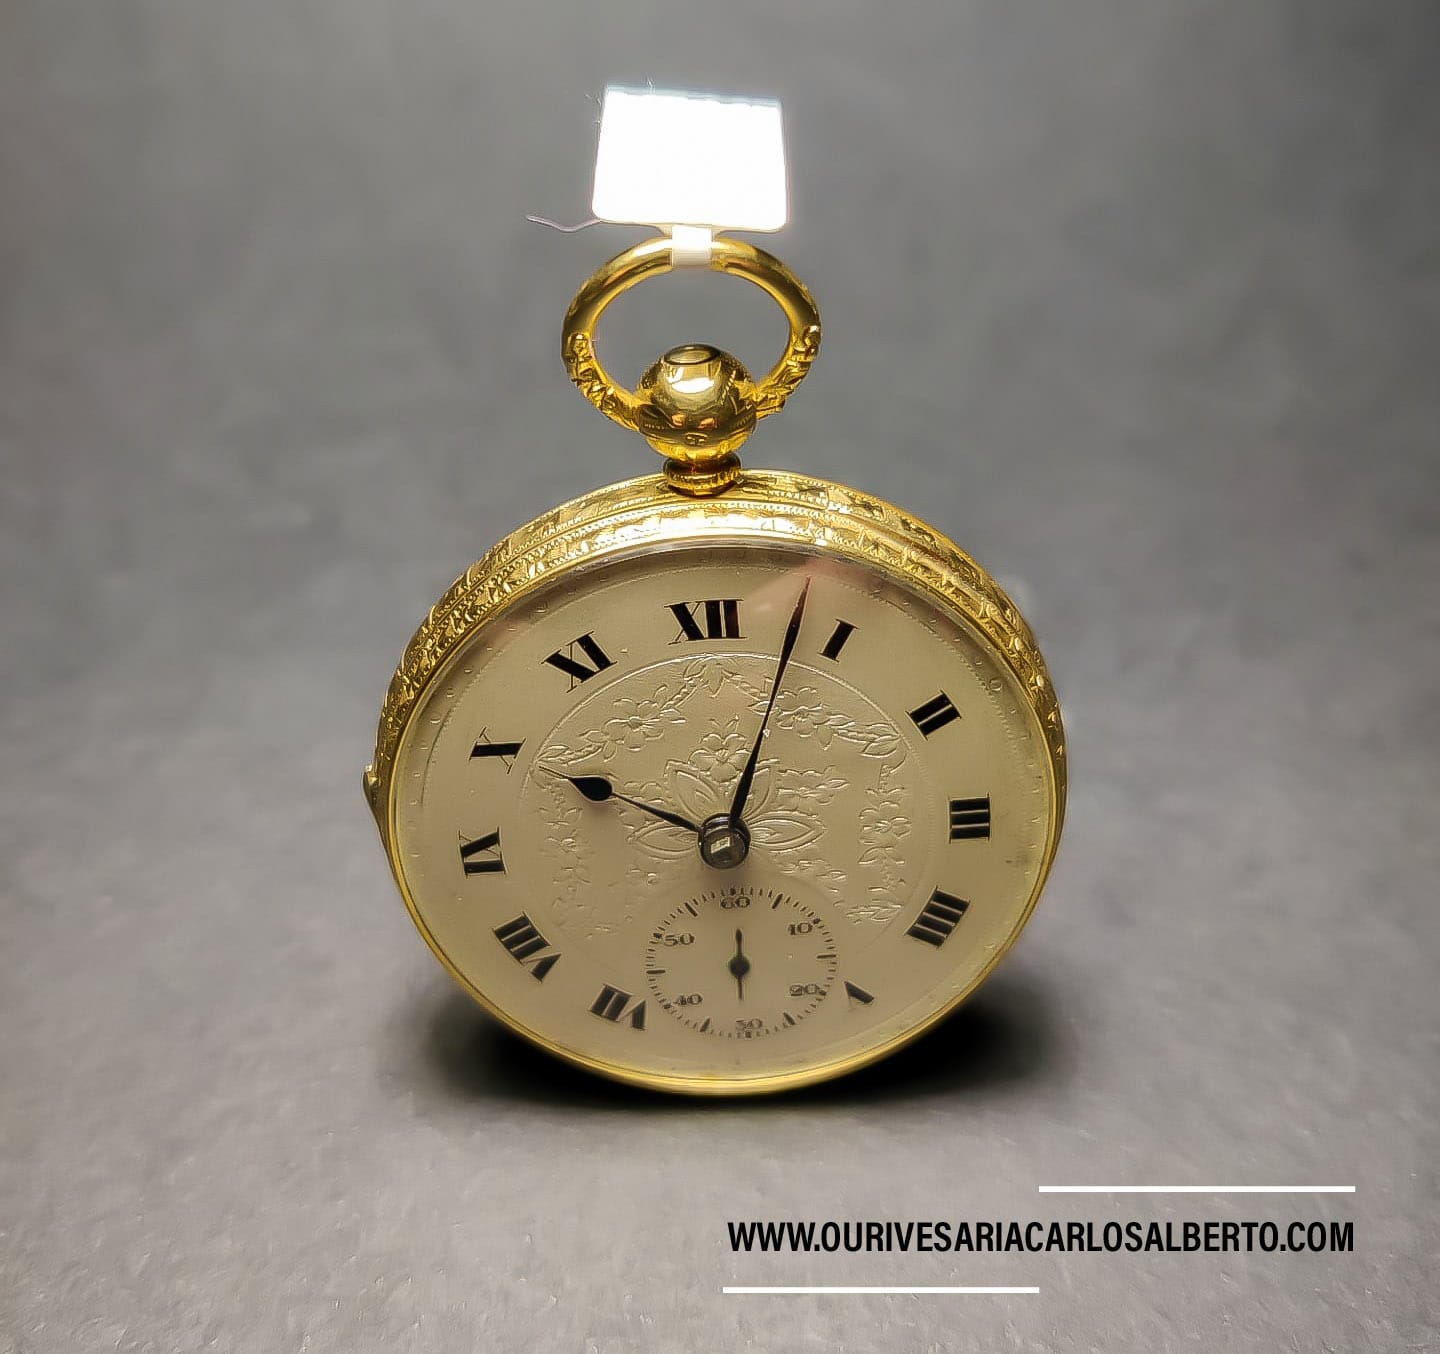 Relógio de bolso cinzelado Ourivesaria Carlos Alberto